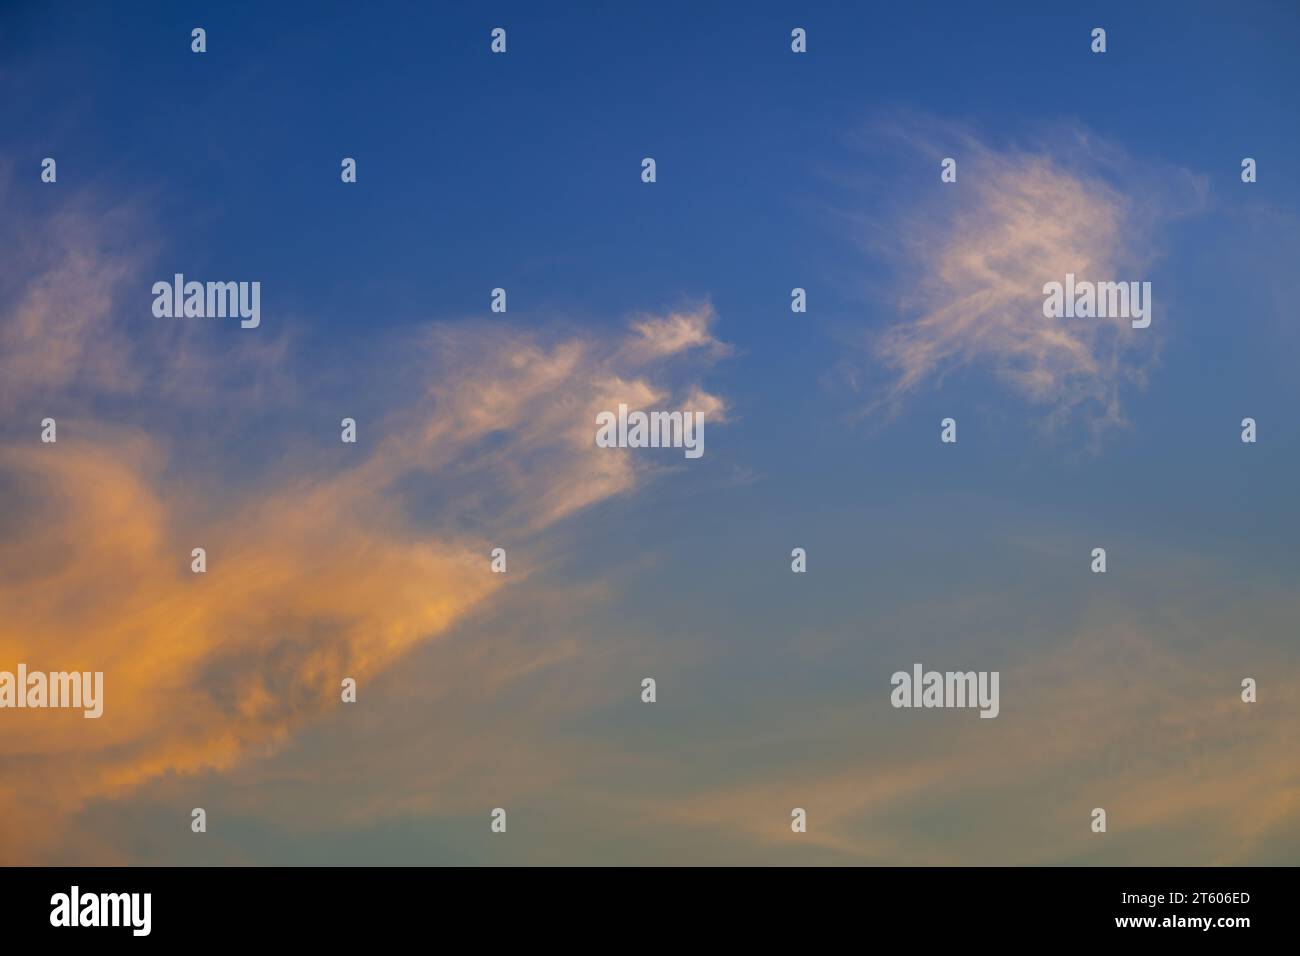 Abendliche Wolkenlandschaft. Weiße, hochrangige Zirruswolken mit orangefarbener Färbung vor blauem Himmel. Detailansicht. Stockfoto